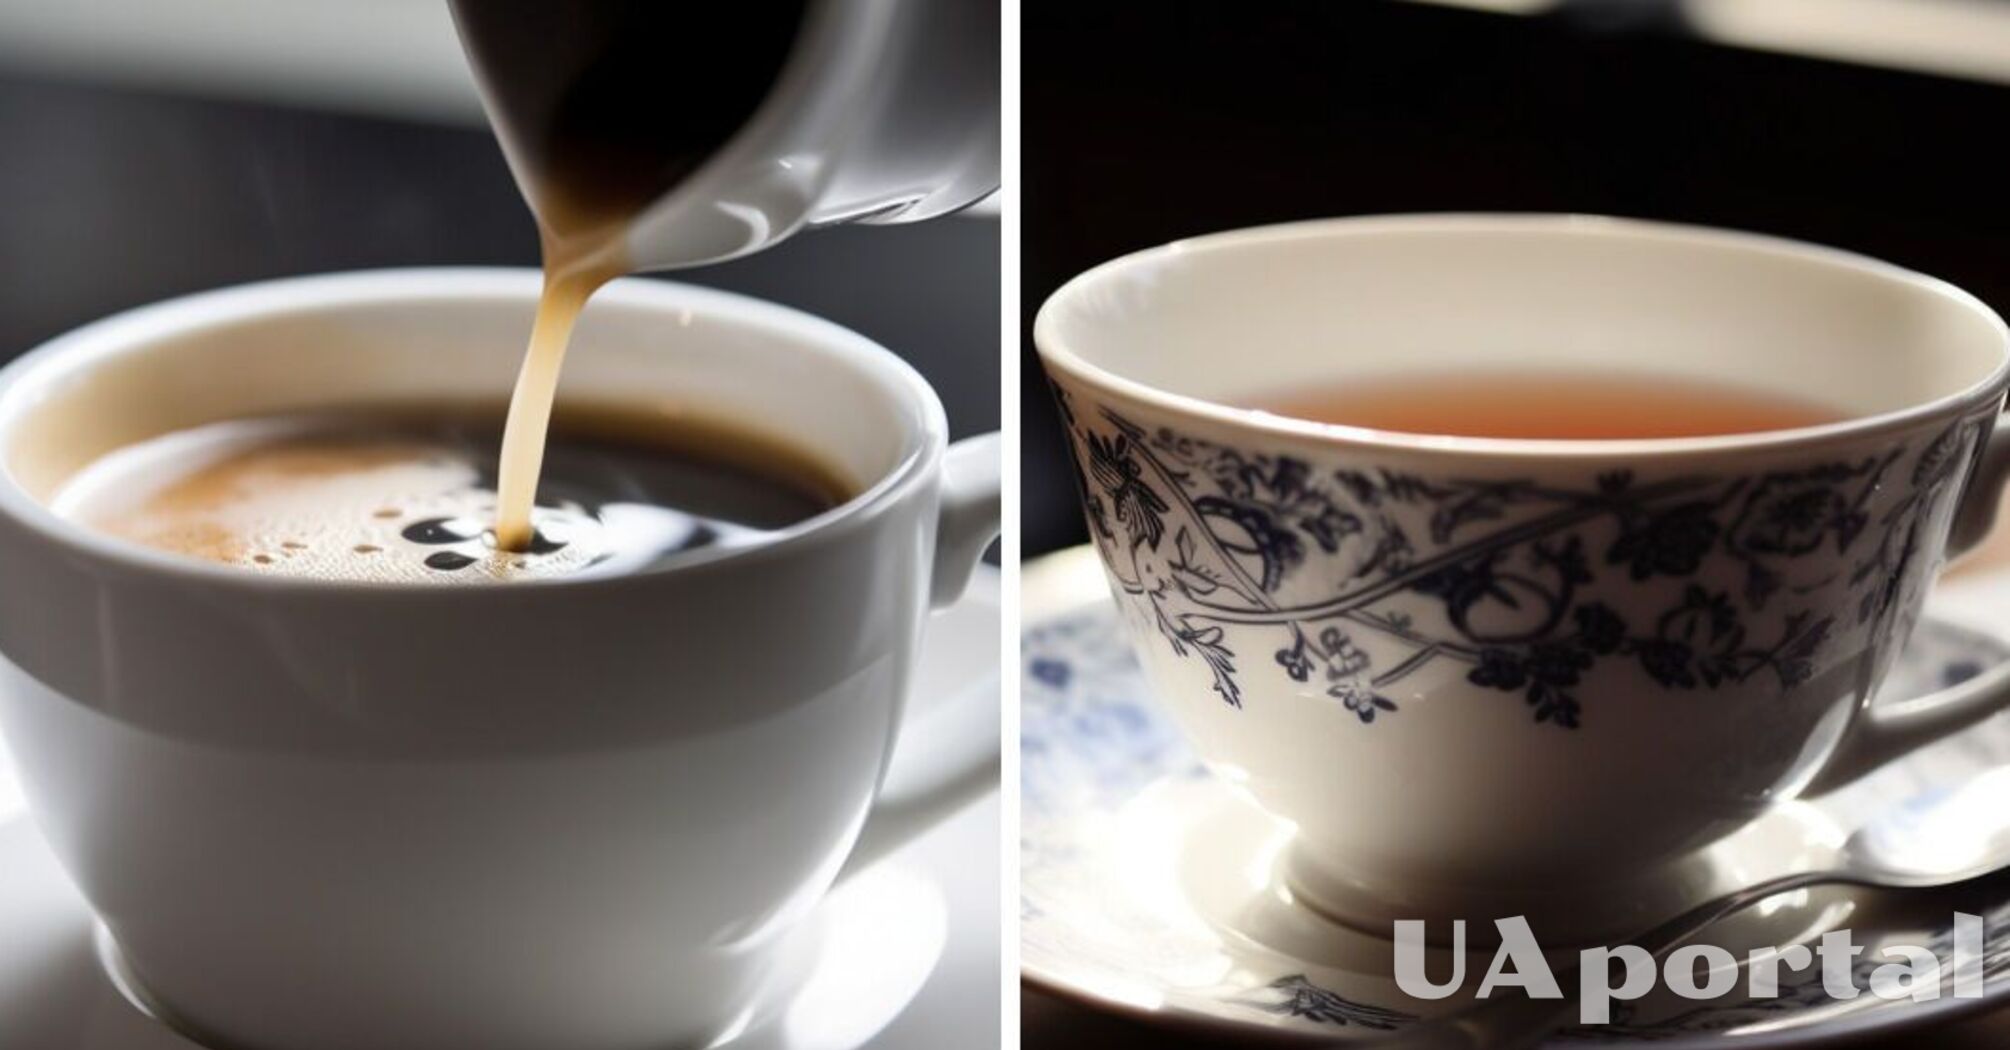 Чай или кофе: какой напиток лучше подходит для завтрака или ужина